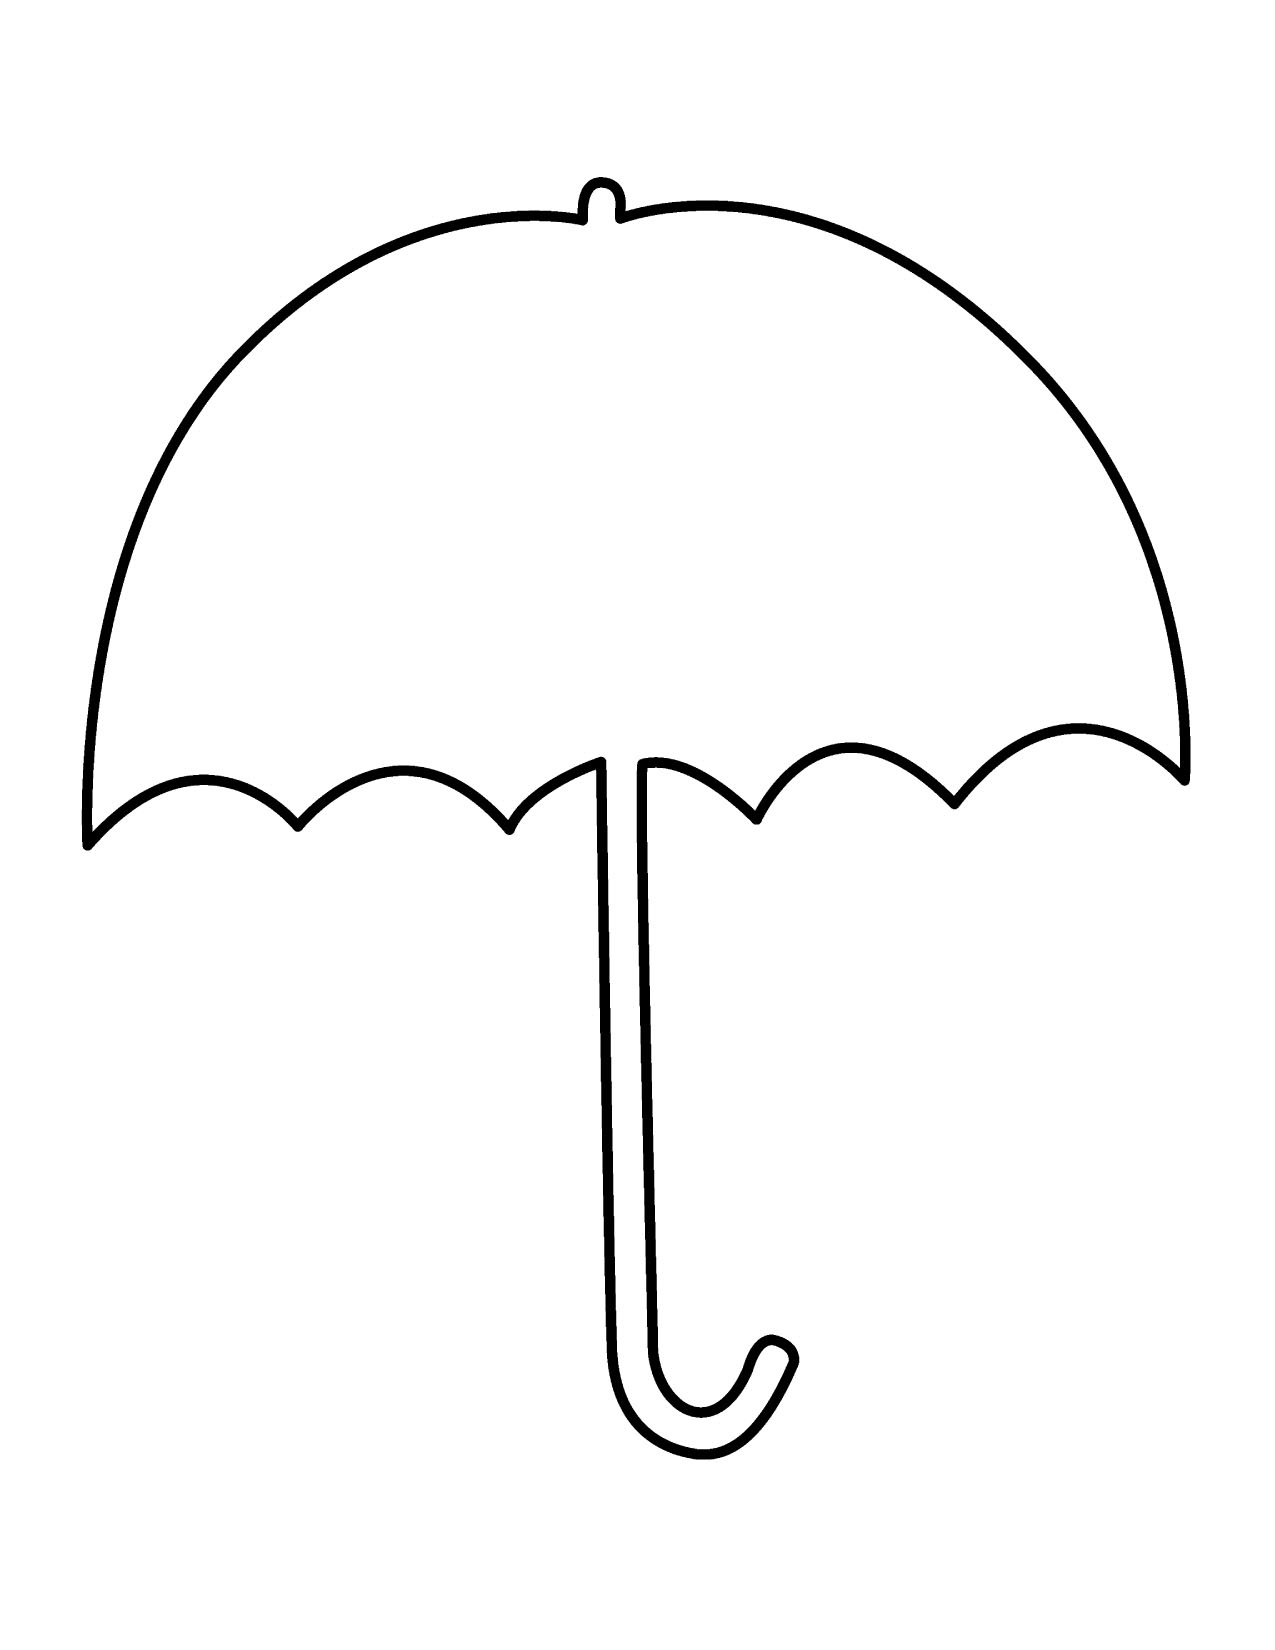 Umbrella clip art free download free clipart images 3